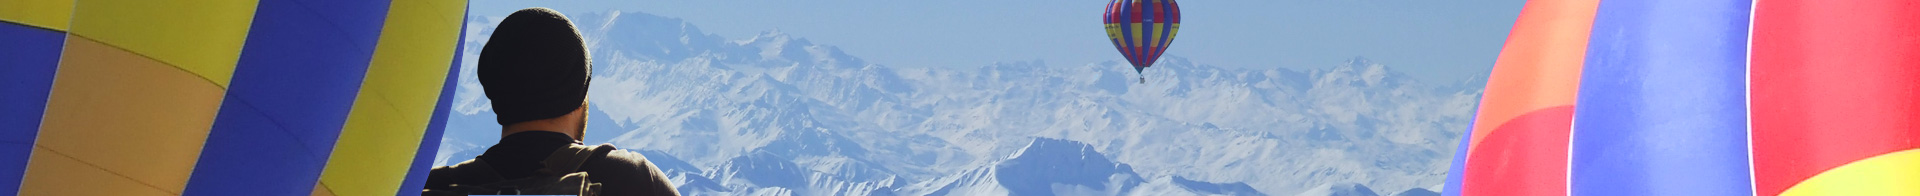 Alpes Montgolfière - Mont Blanc